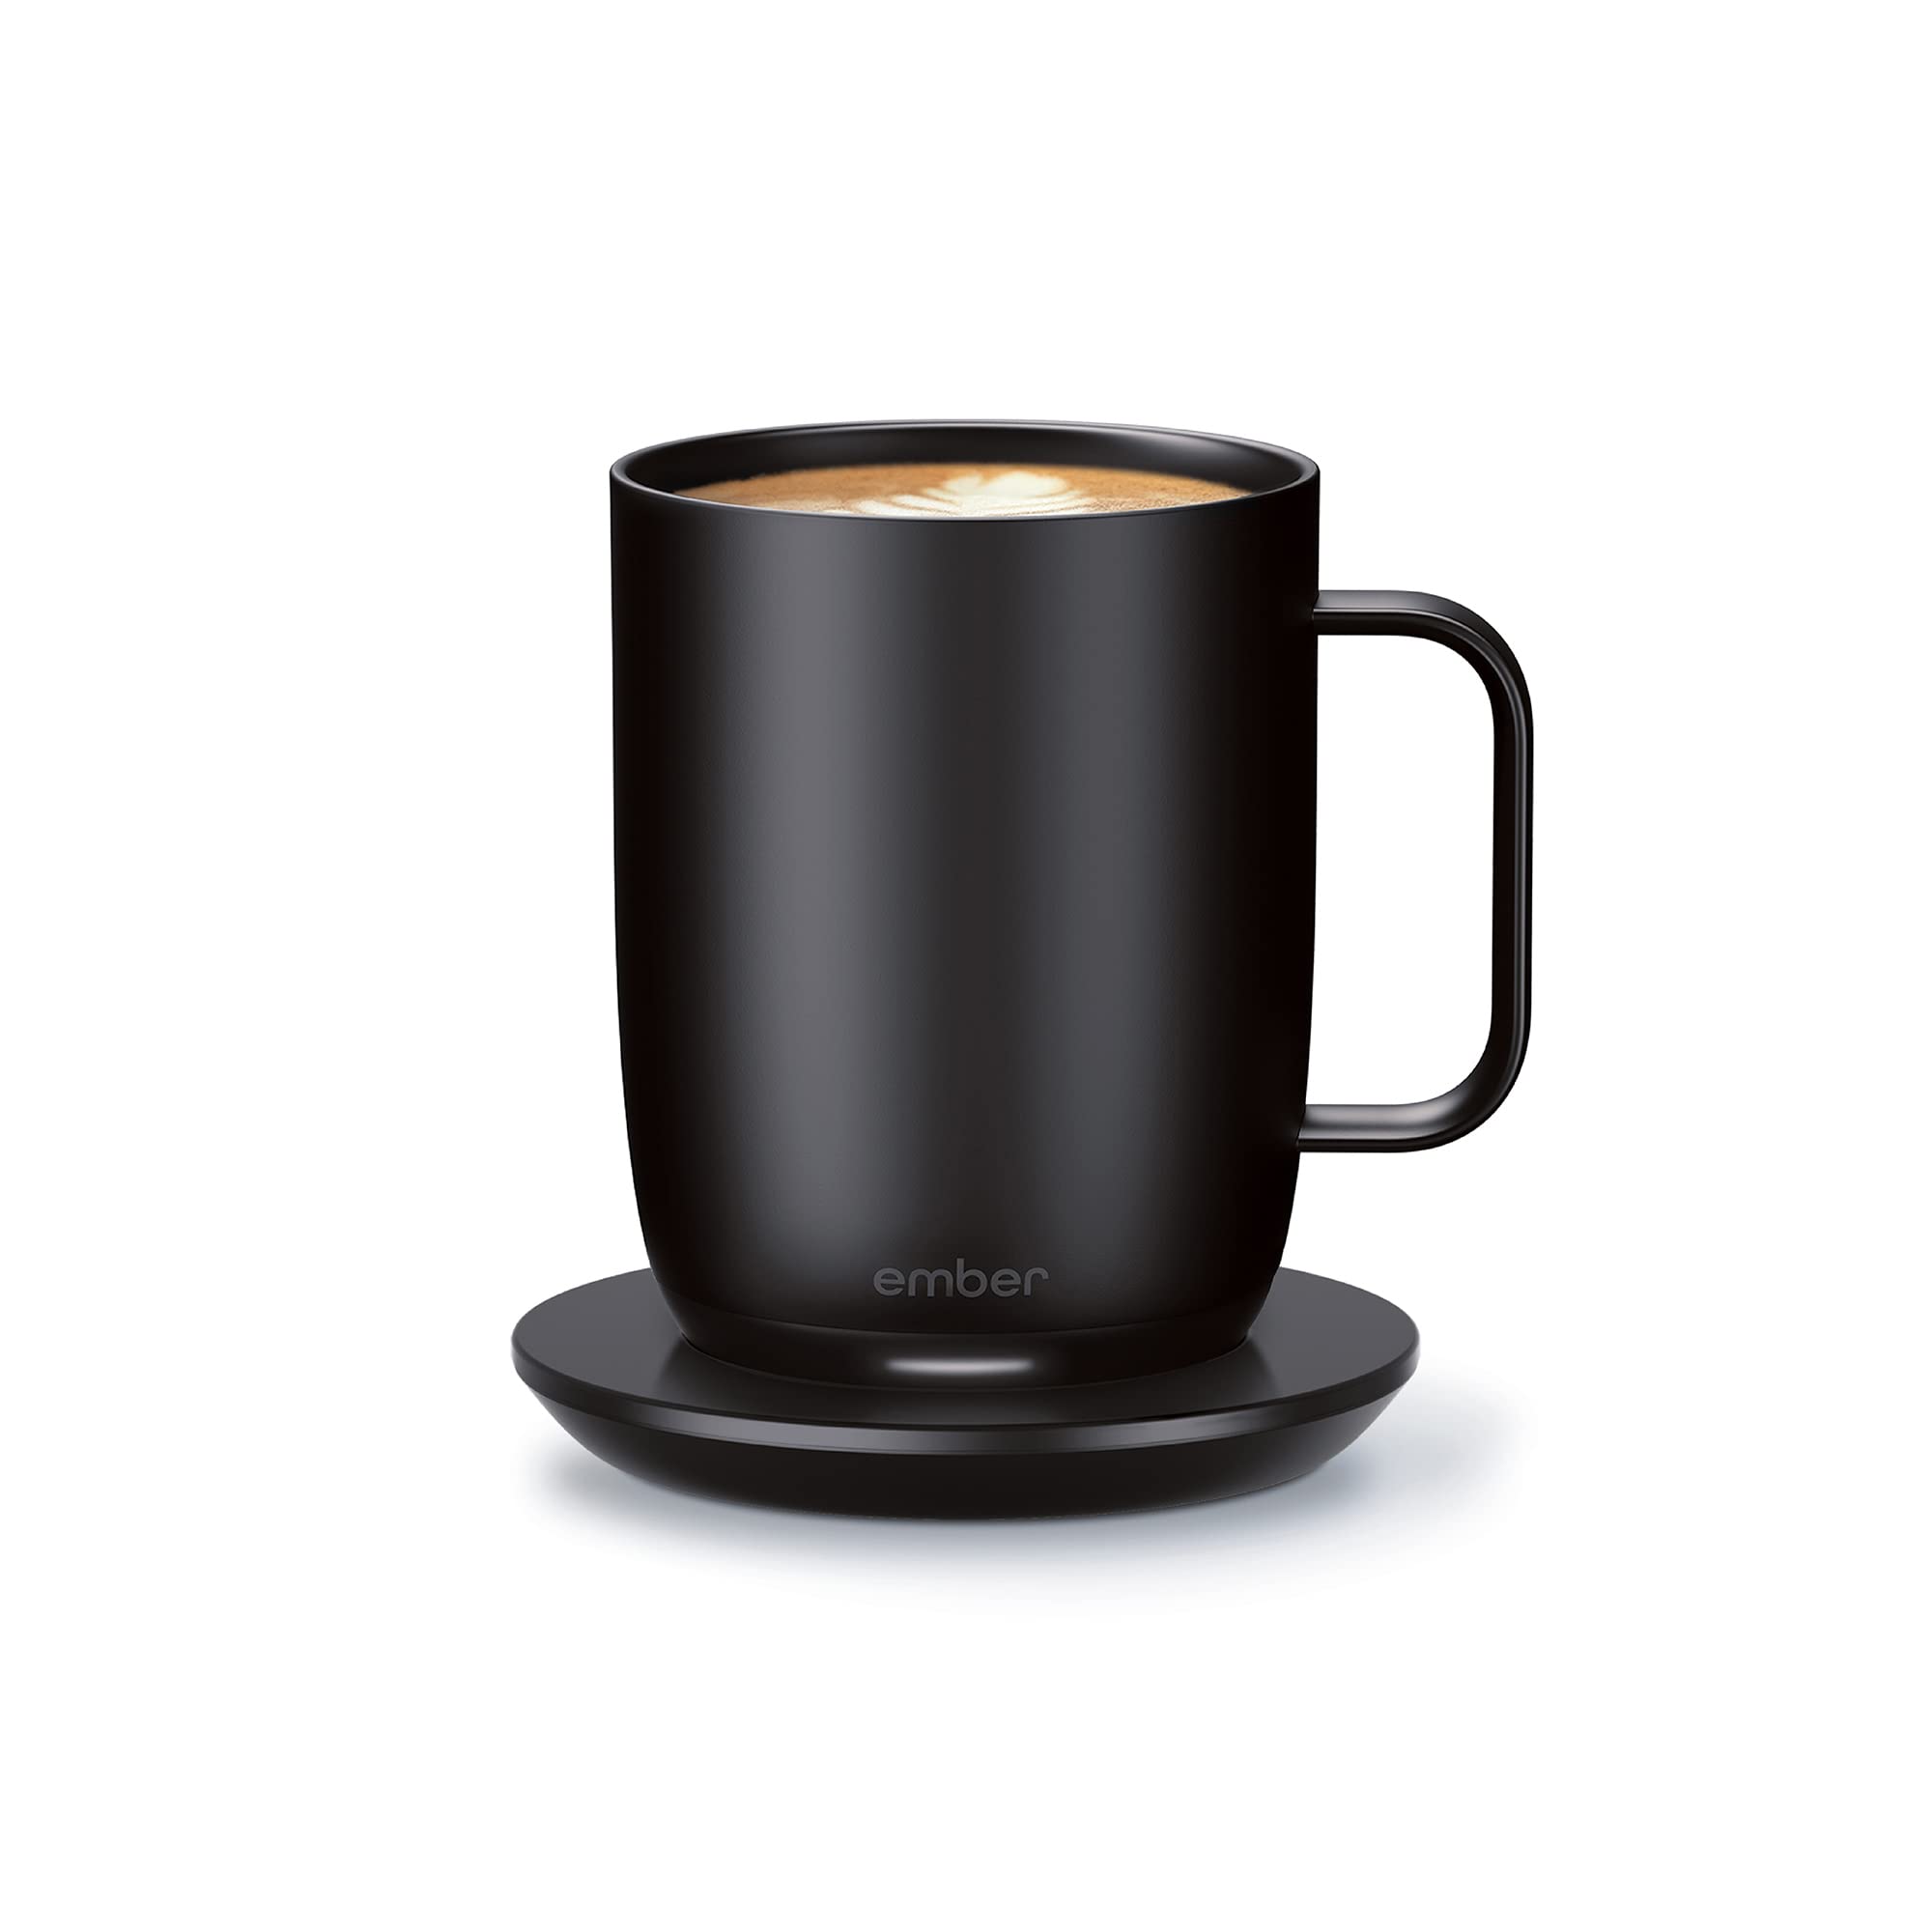 Ember 全新温控智能马克杯 2，10 盎司，1.5 小时电池寿命 - 应用程序控制加热咖啡杯 - 改进设计